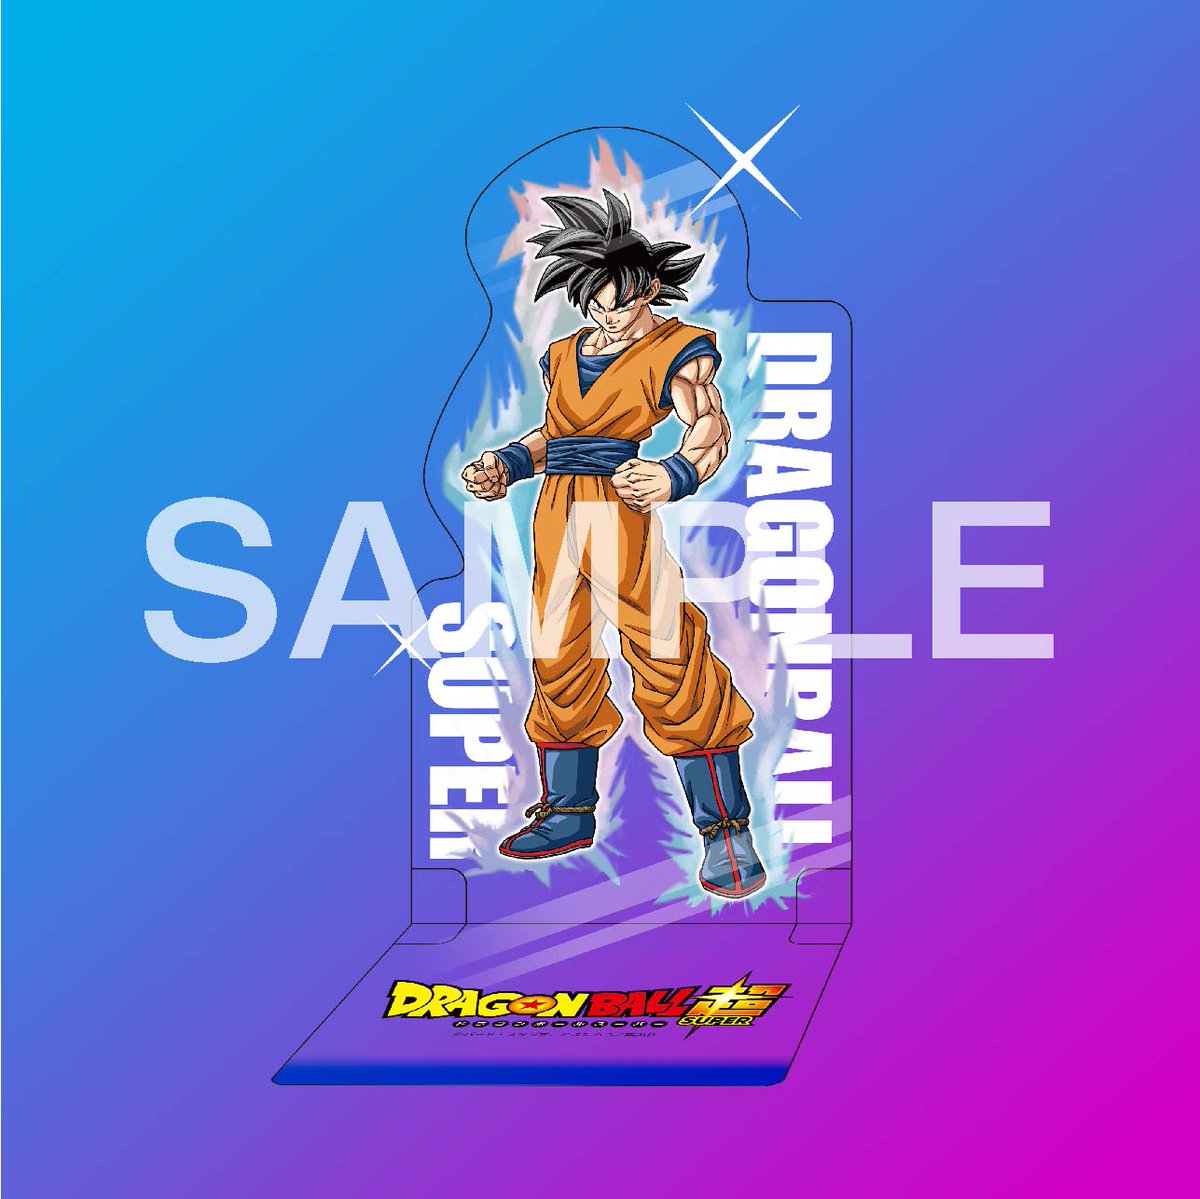 Imagens de Goku Instinto - Kami Sama Explorer - Dragon B